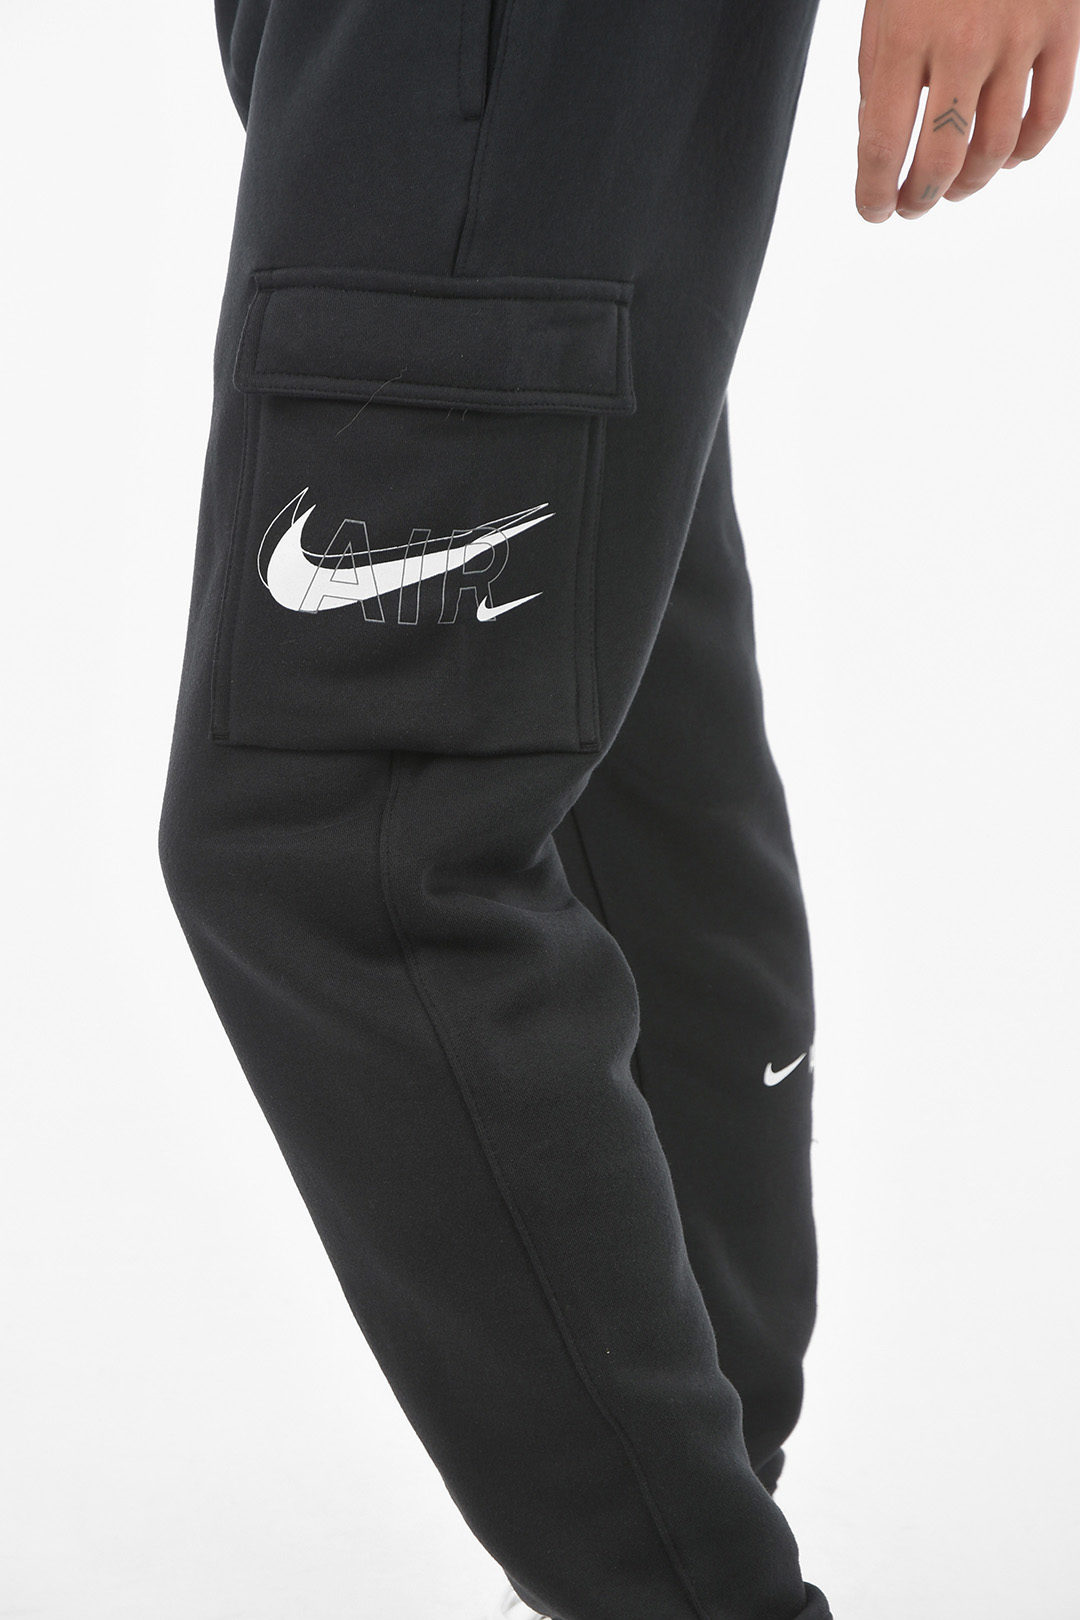 Nike Mens Air Print Cargo Pants - Black